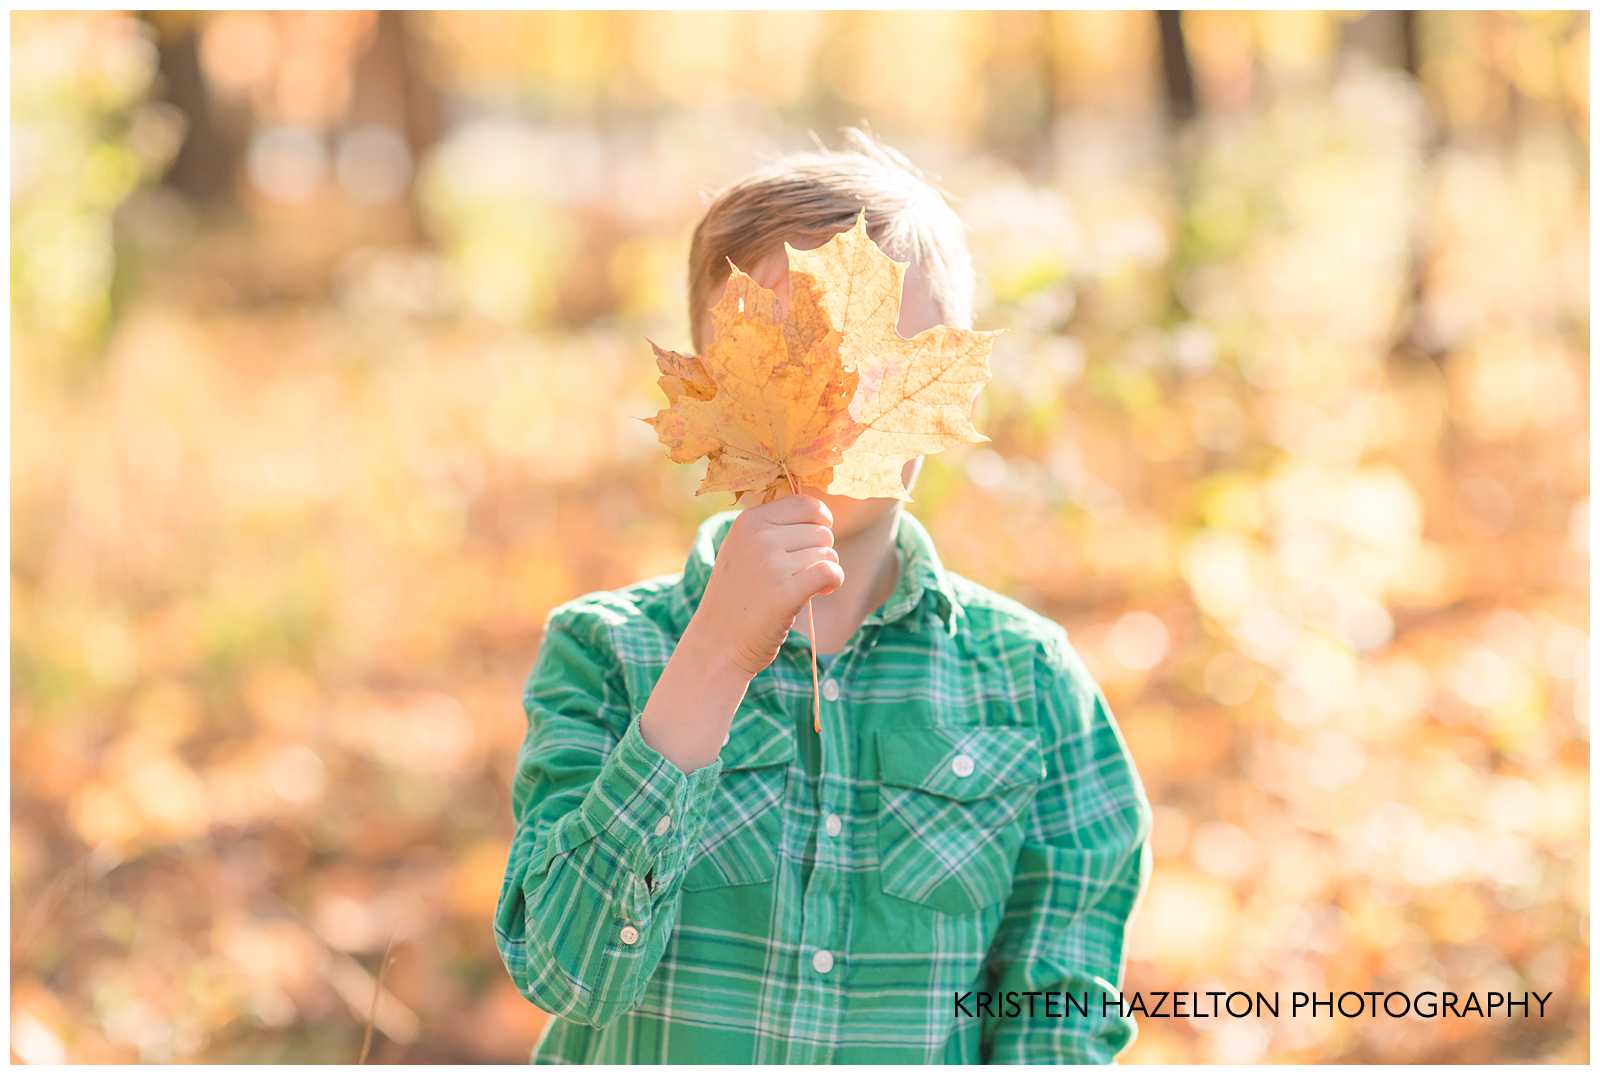 Young boy hiding behind a leaf